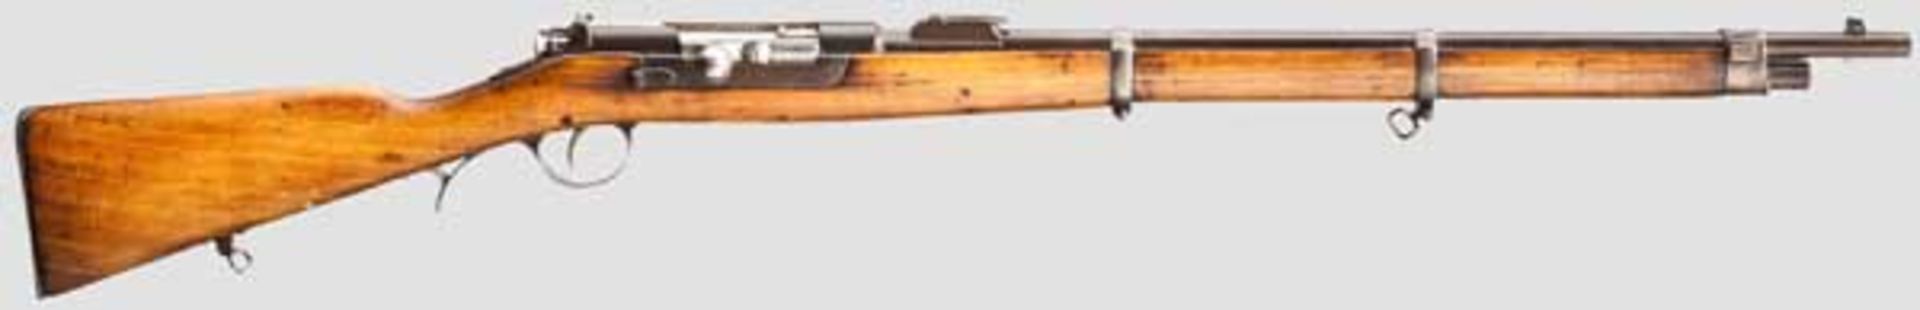 Kurzgewehr Kropatschek Mod. 1886 Kal. 8 x 60R, Nr. A980. Nummerngleich. Lauf eingefettet.